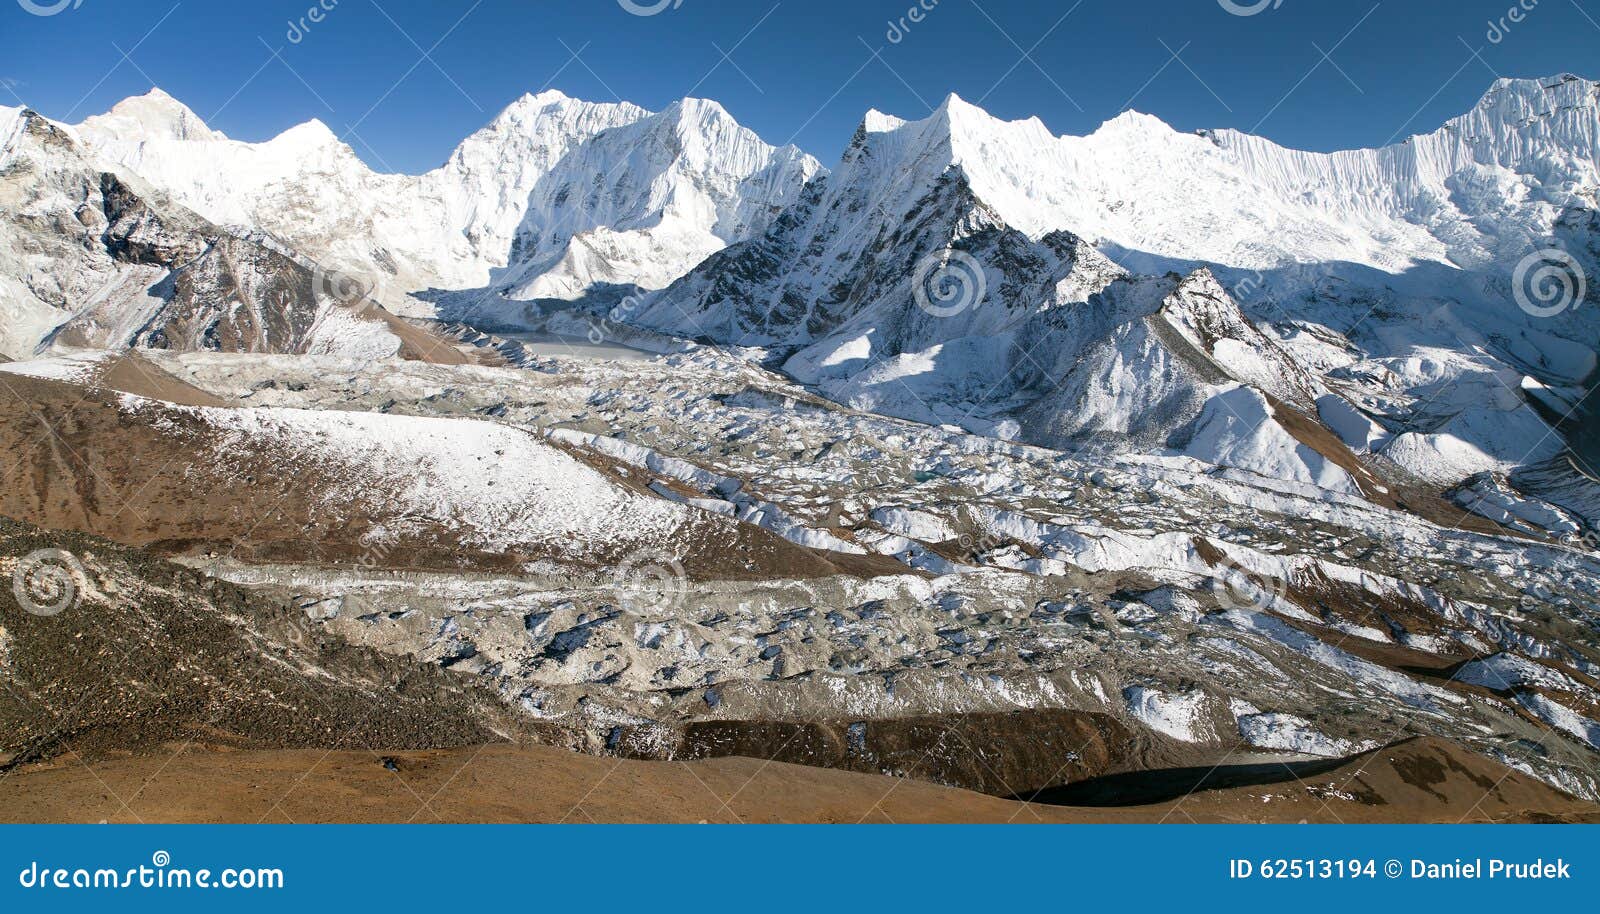 kali himal, beautiful mountain in khumbu valley